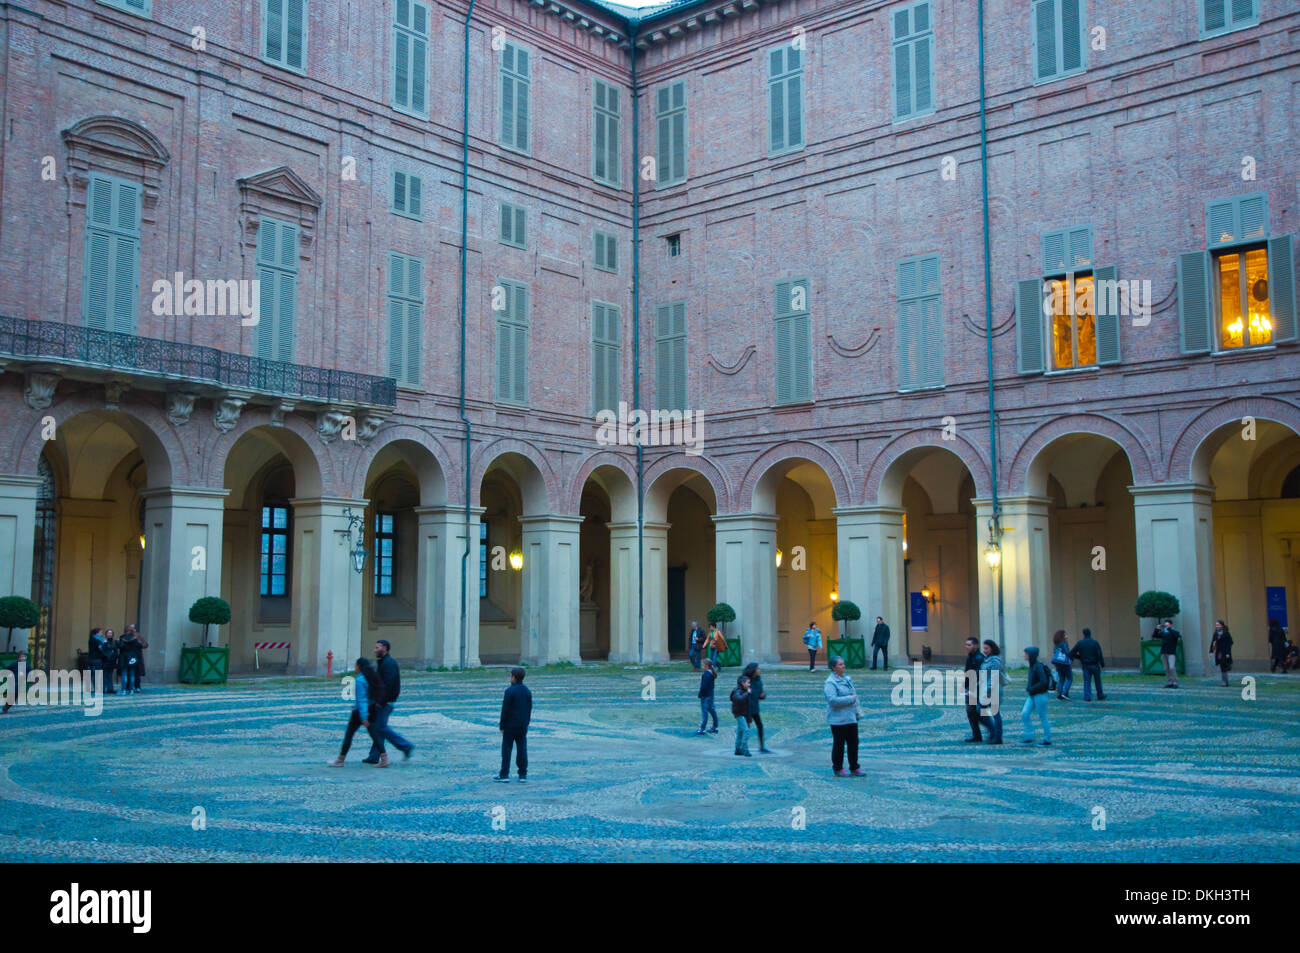 Cortile, Palazzo reale, Palazzo reale, Piazza reale, Torino, Italia Foto Stock